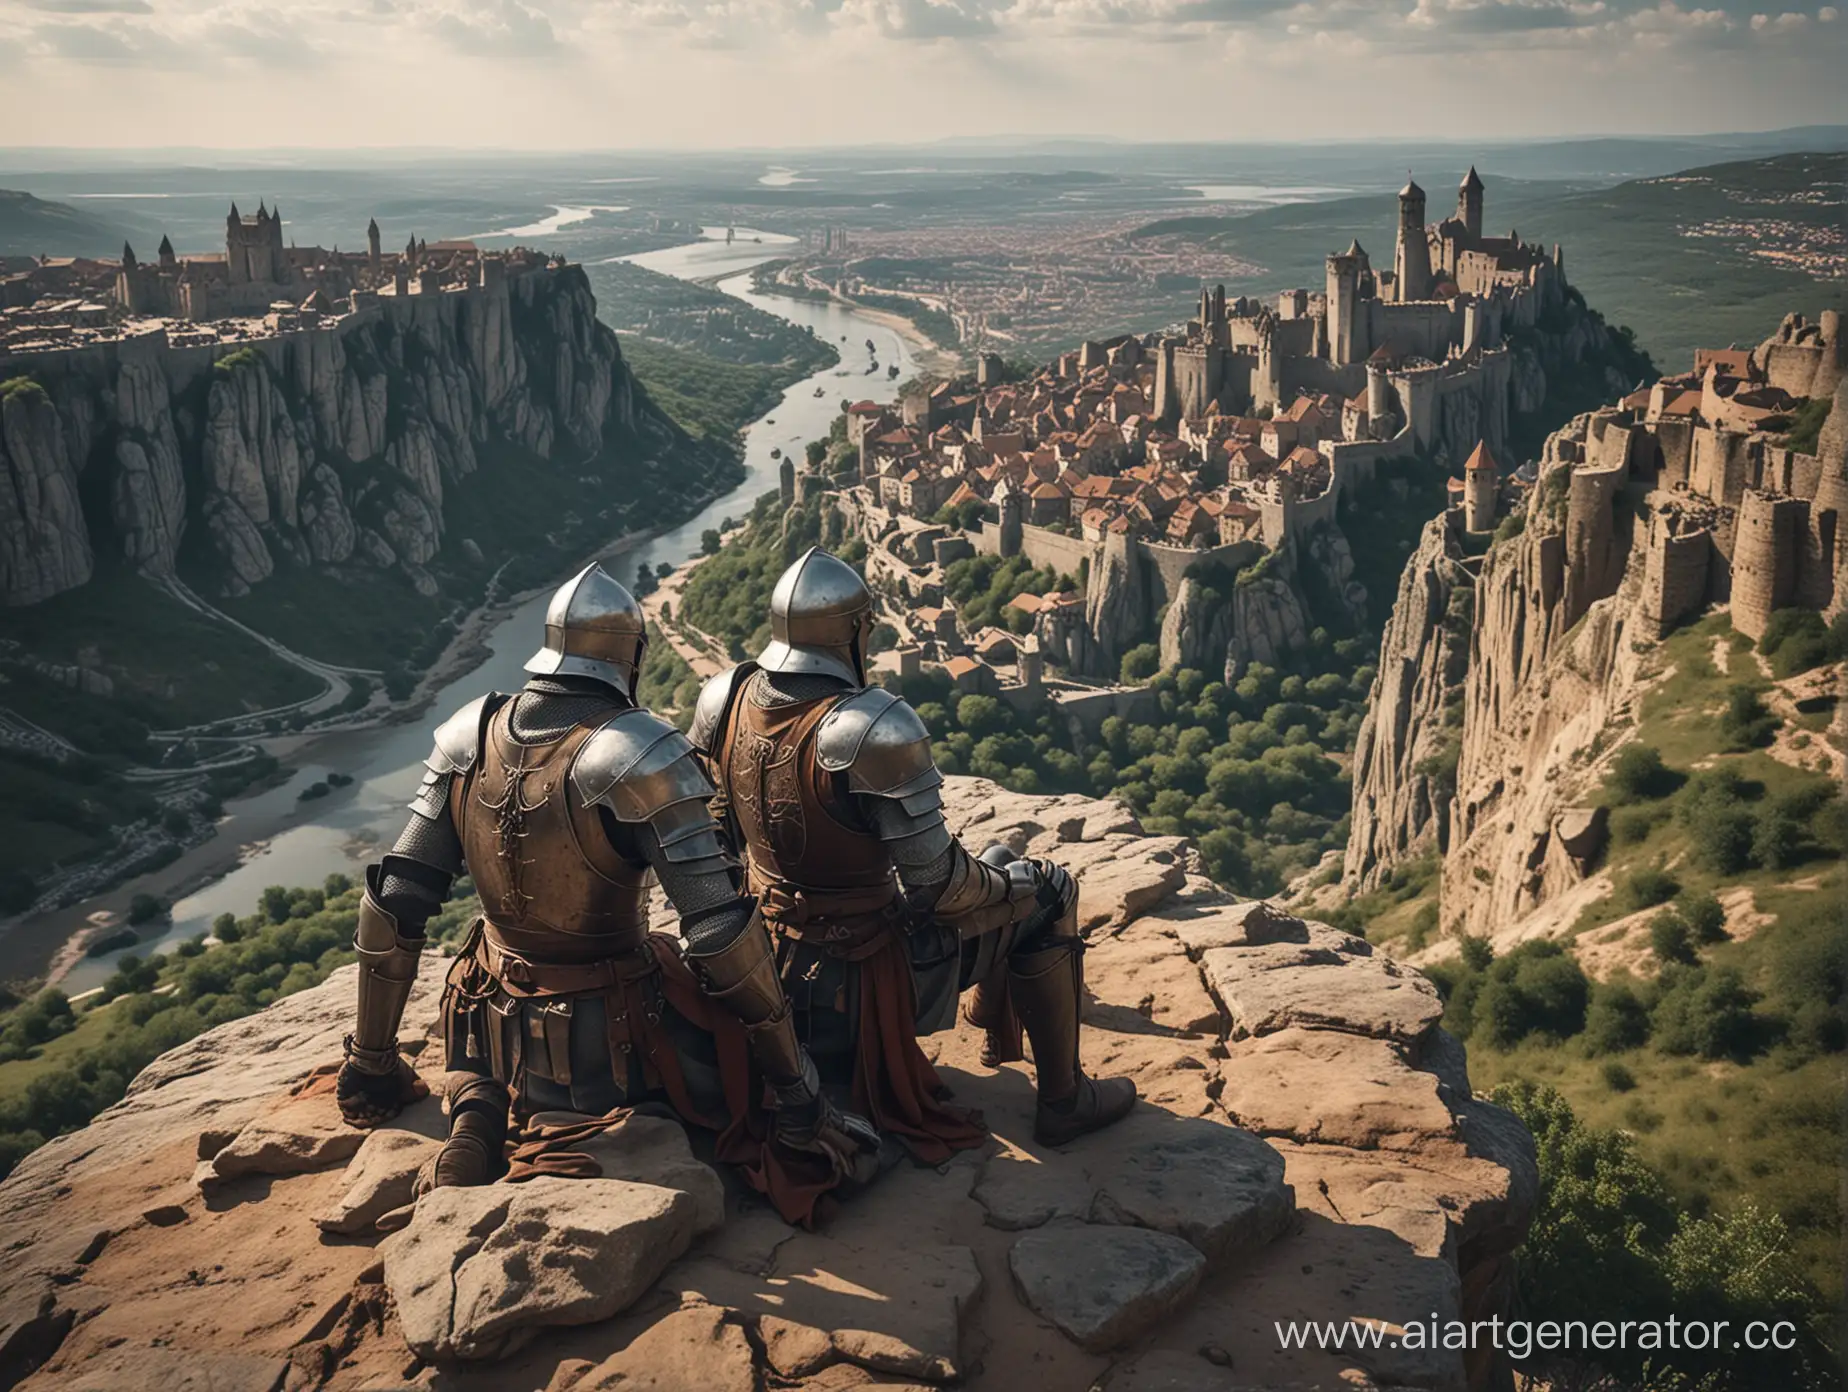 два накаченных рыцаря отдыхают на обрыве , в далеке виден средневековый город